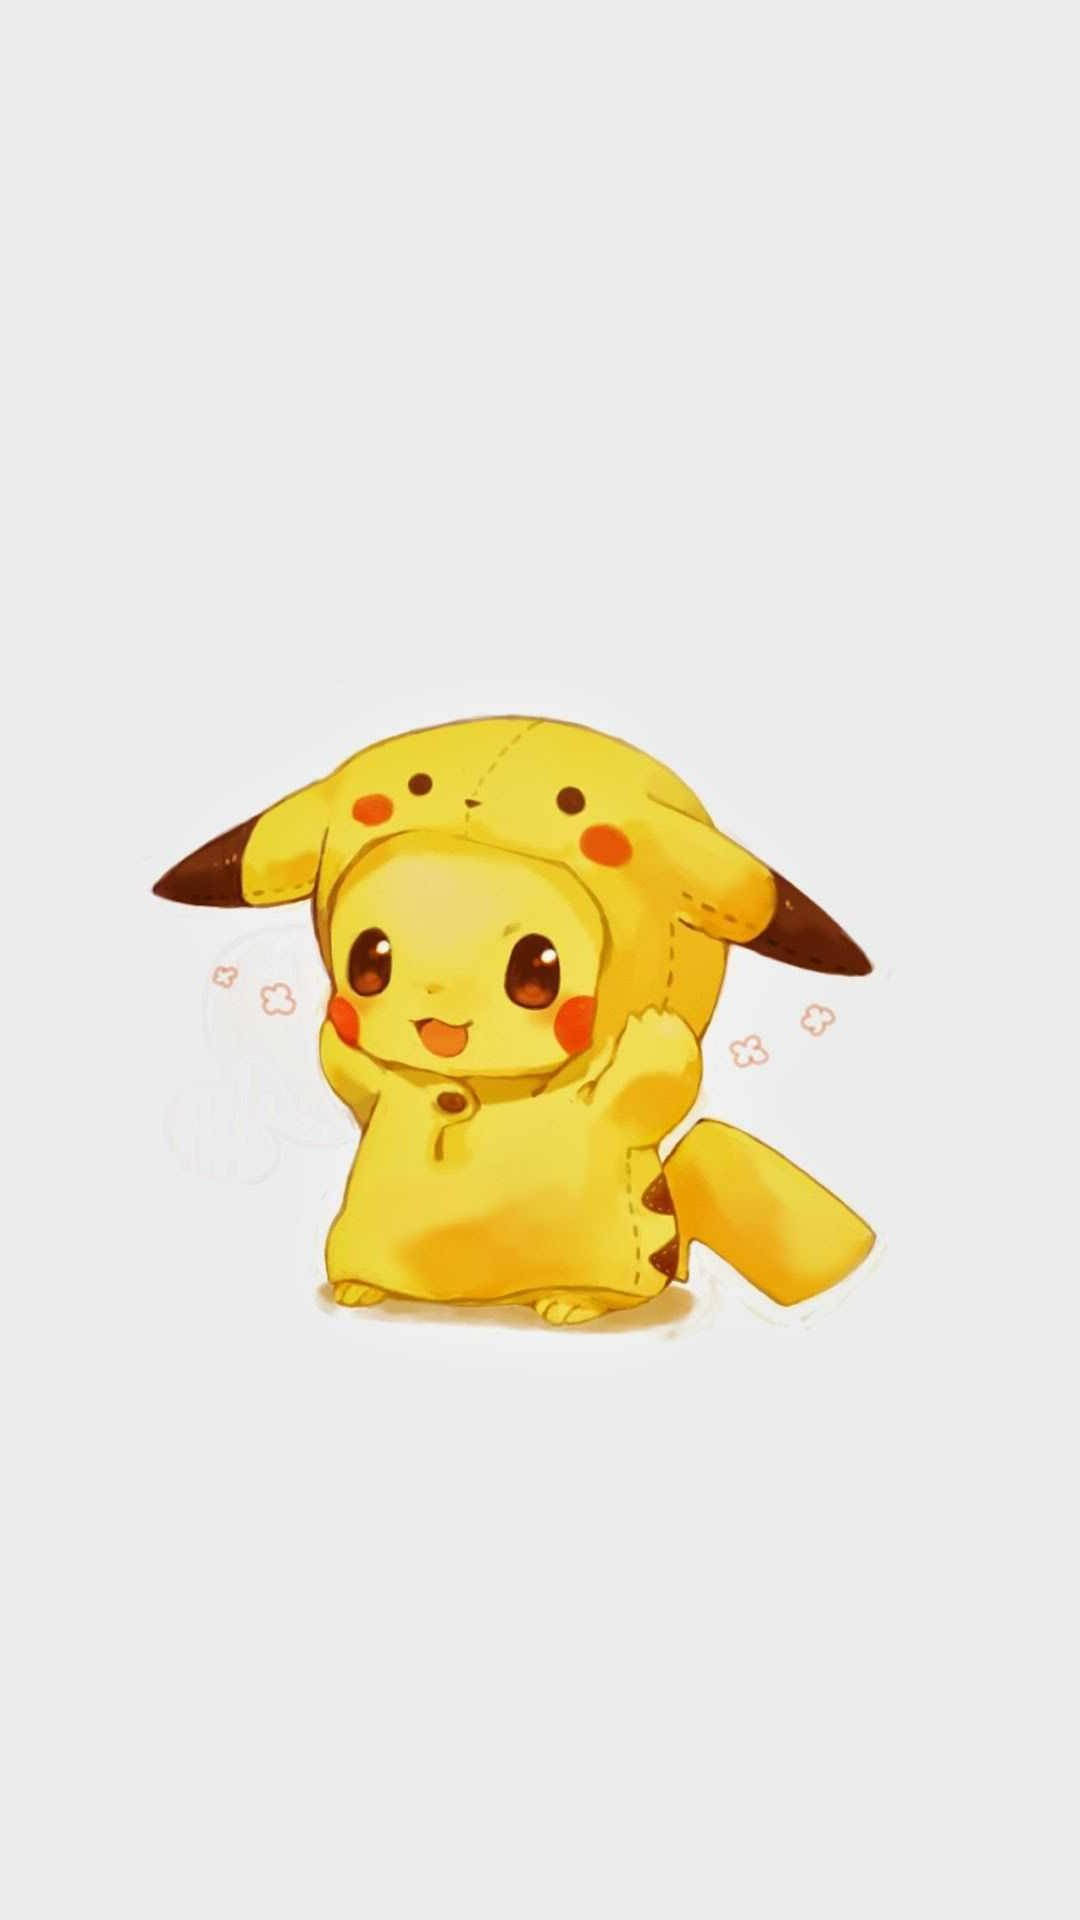 Little Pikachu Portrait Image Background